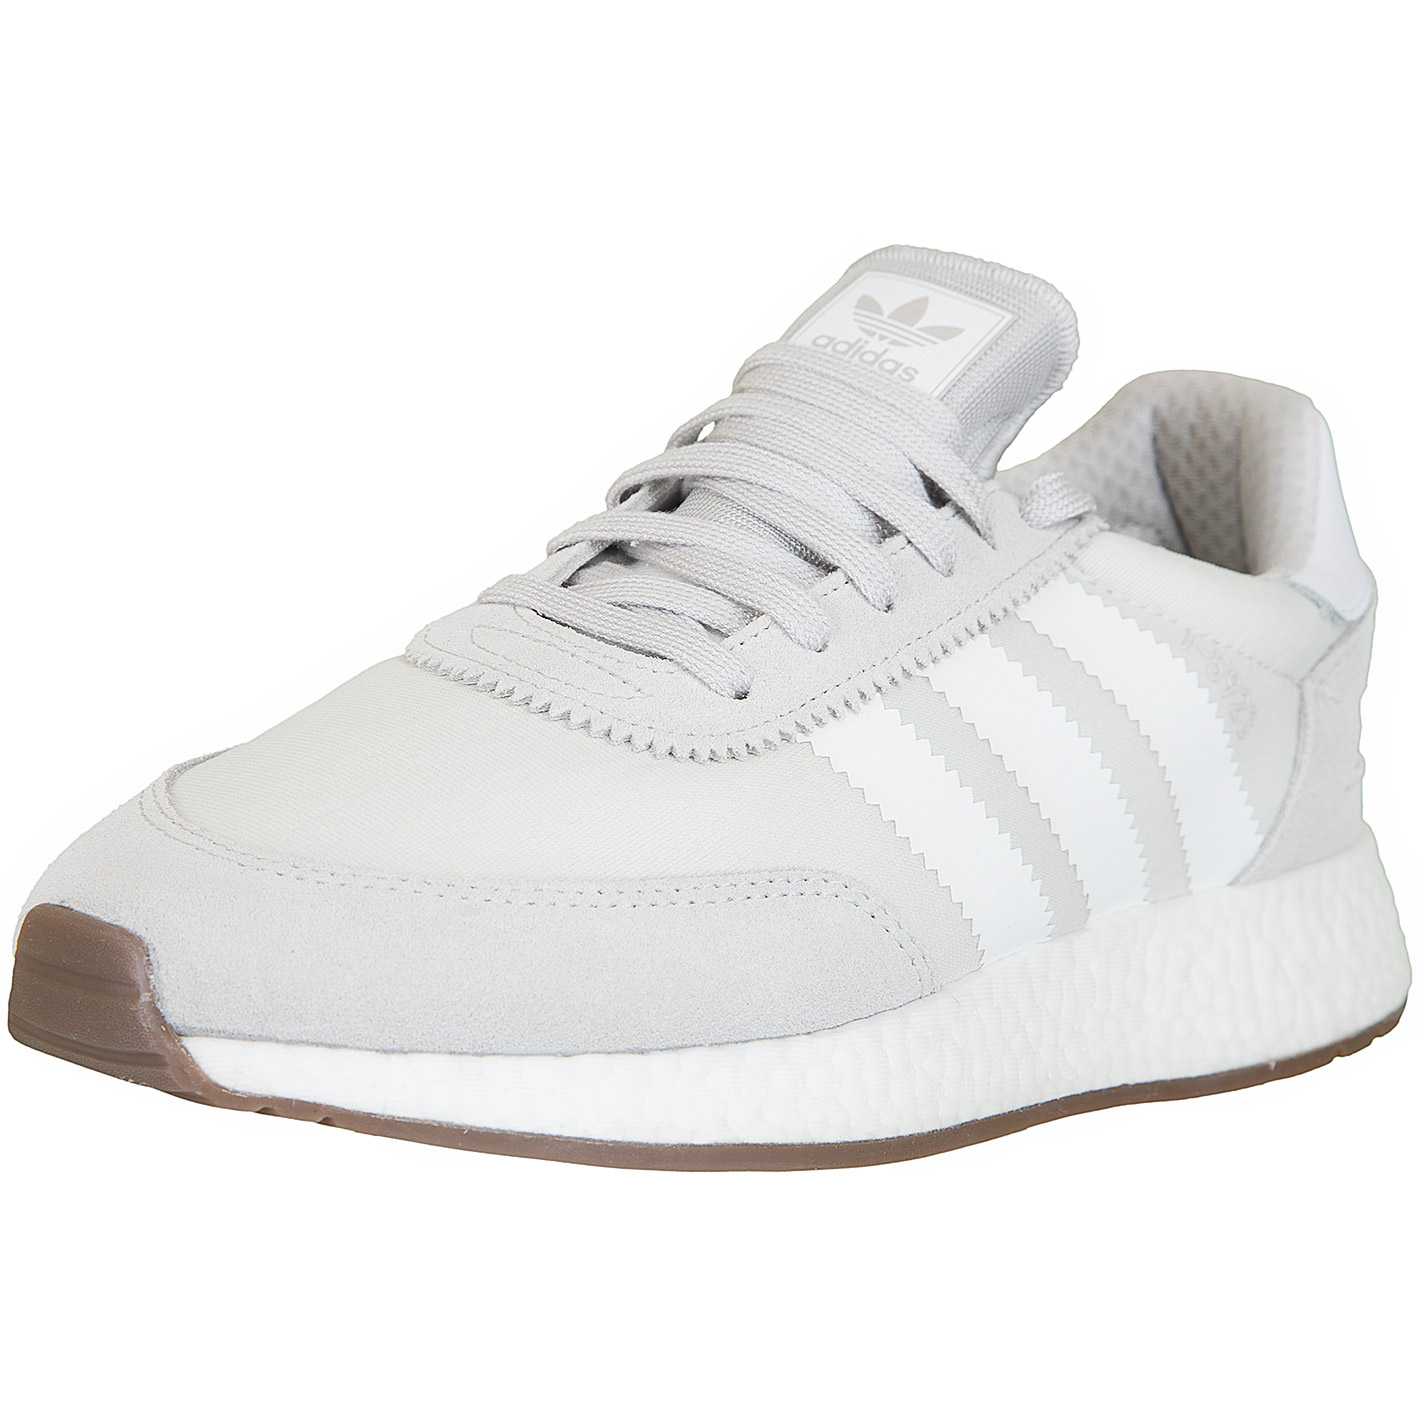 ☆ Adidas Originals Sneaker I-5923 grau/weiß - hier bestellen!